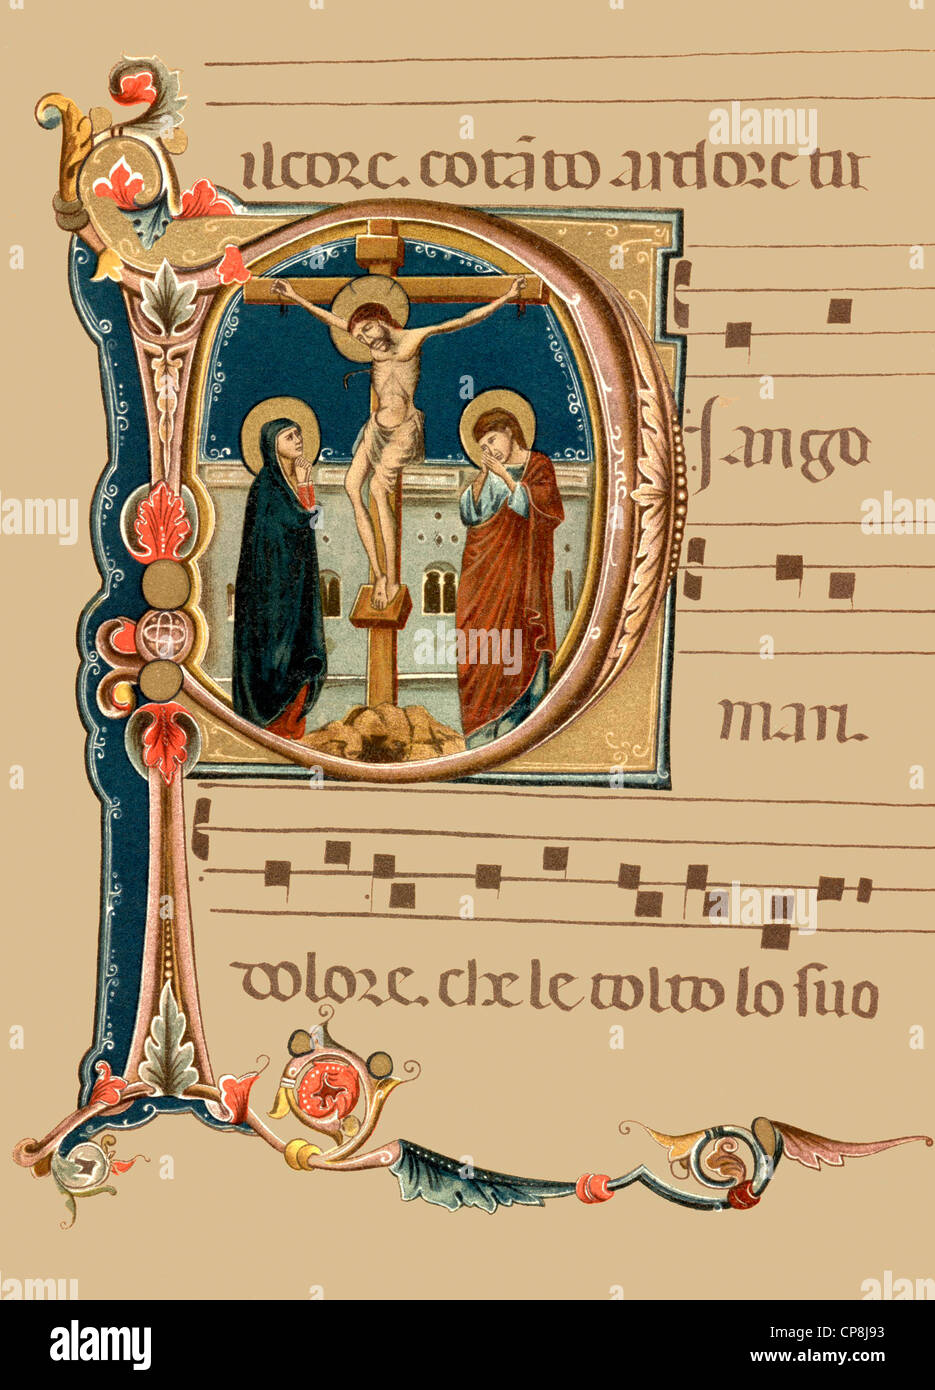 Historische Darstellung aus dem 19. Jahrhundert, ornamentale Anfangsbuchstaben einer italienischen Laude Handschrift aus dem 14. Jahrhundert, H Stockfoto